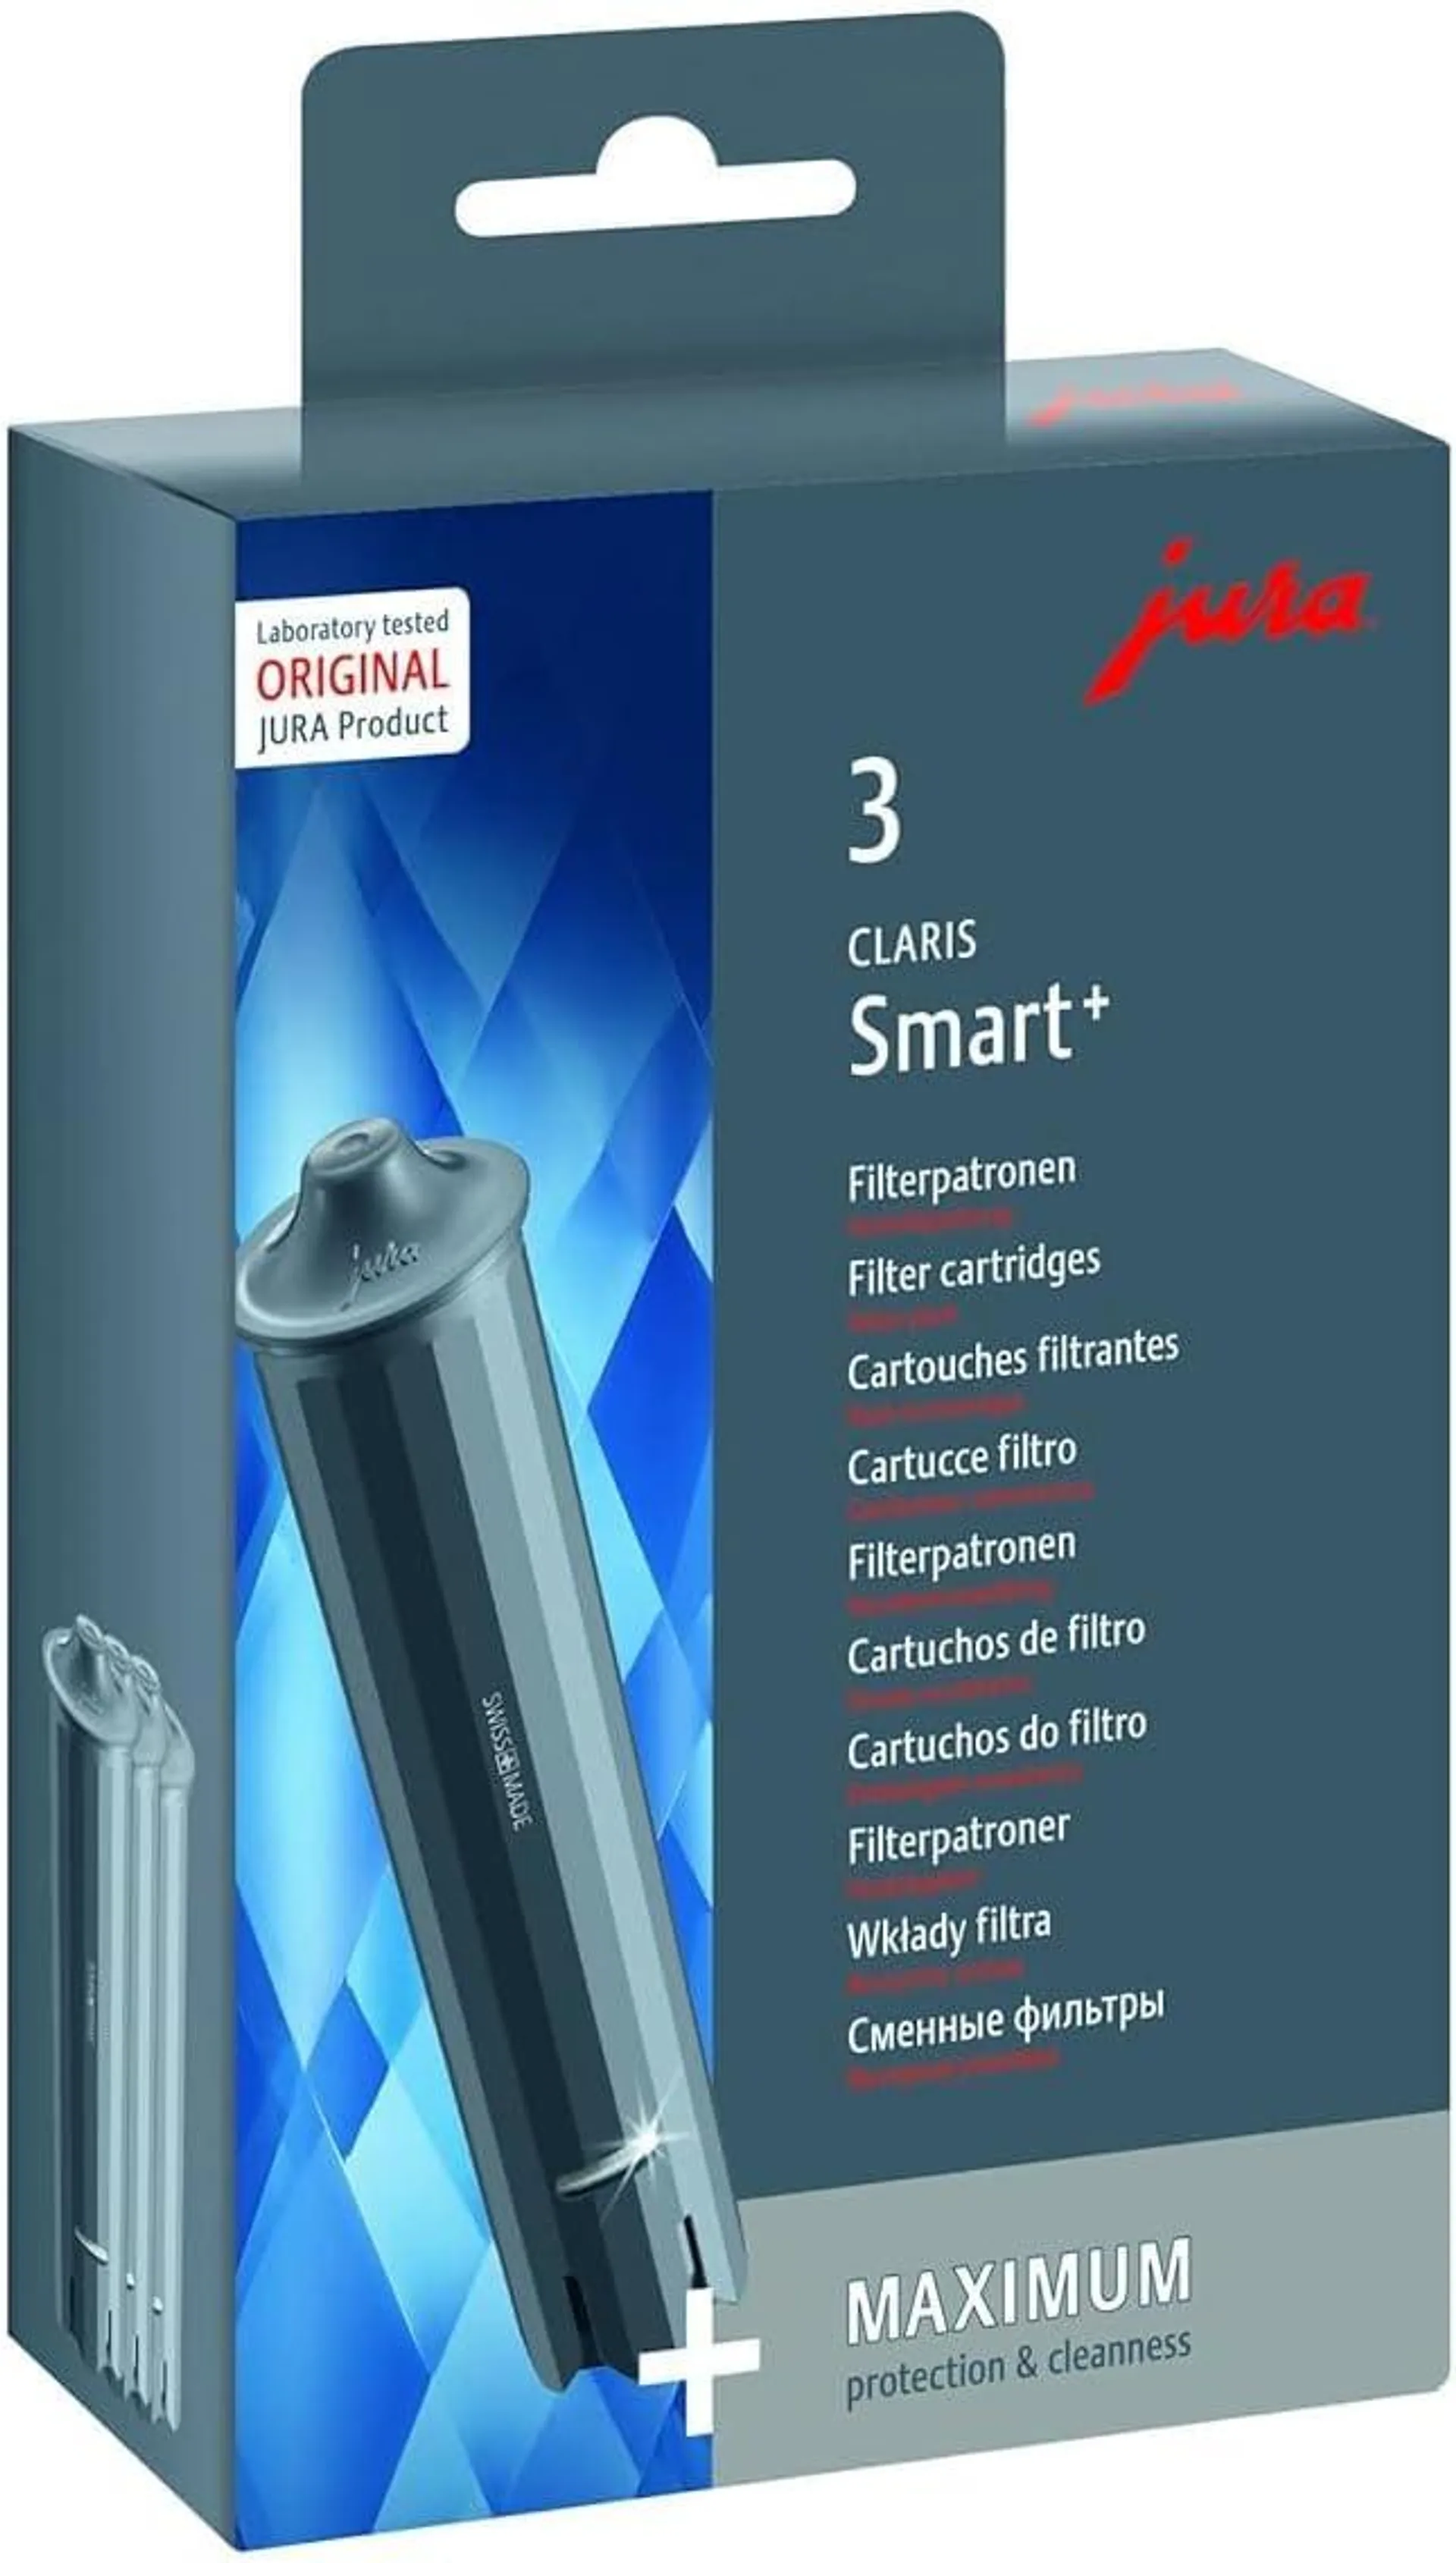 JURA original - CLARIS Smart+ Filterpatrone mit automatischer Filtererkennung - TÜV-zertifizierte Hygiene - 3er-Pack - 24233